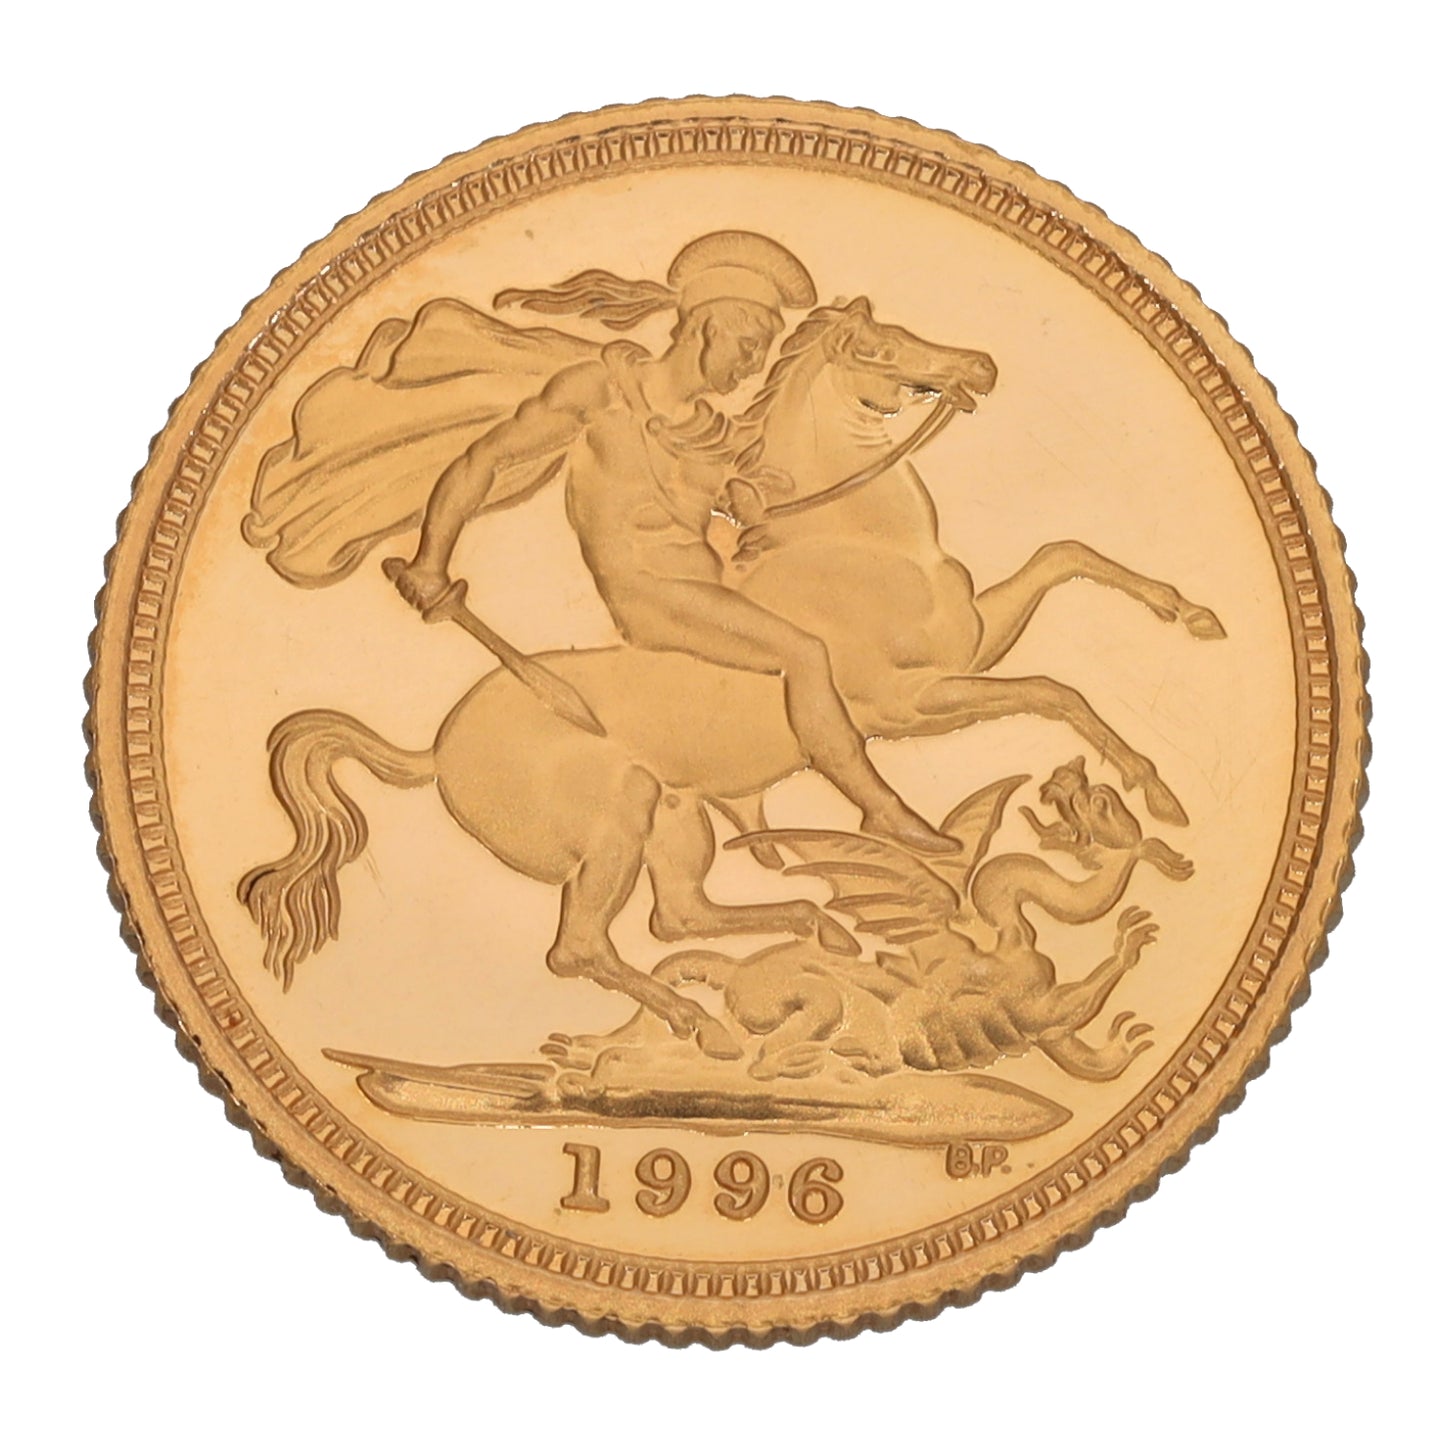 22ct Gold Queen Elizabeth II Half Sovereign Coin 1996